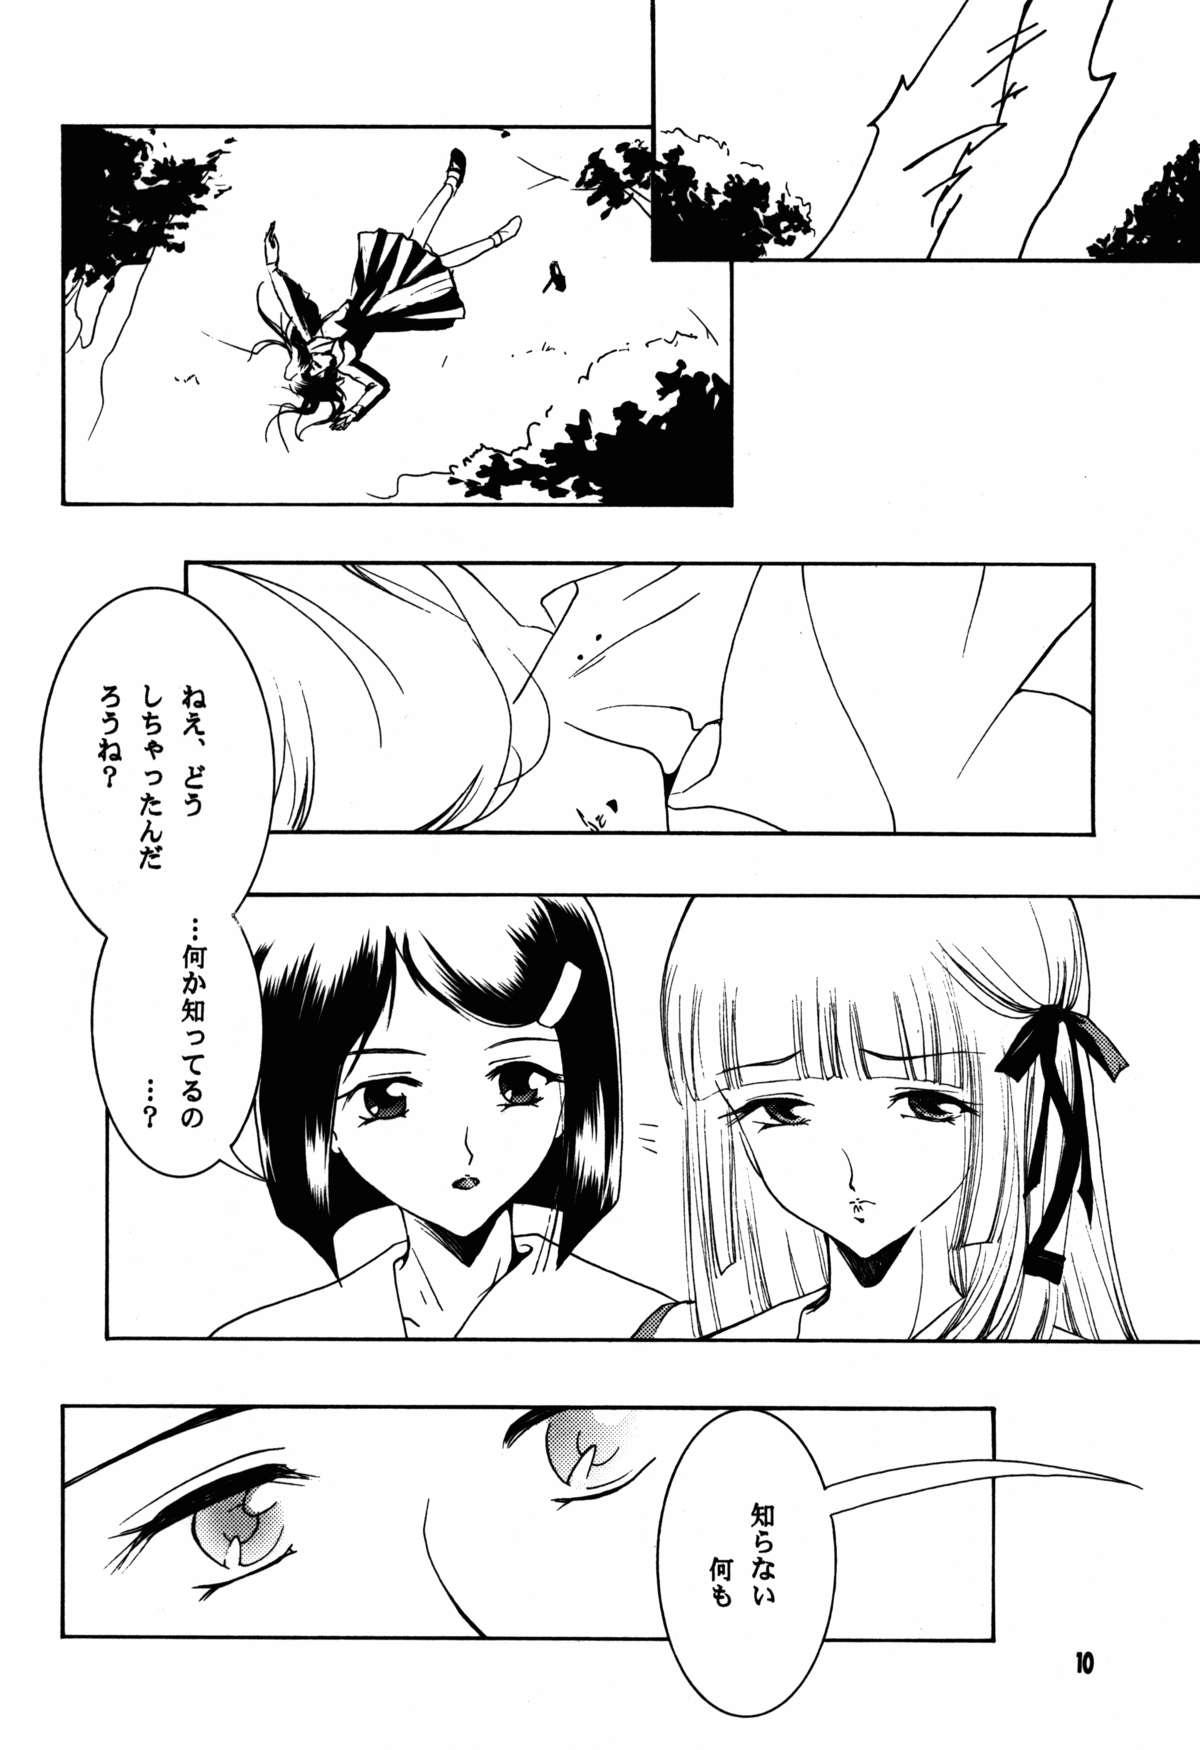 Spank Hadashi no VAMPIRE 17 - Vampire princess miyu Friends - Page 10